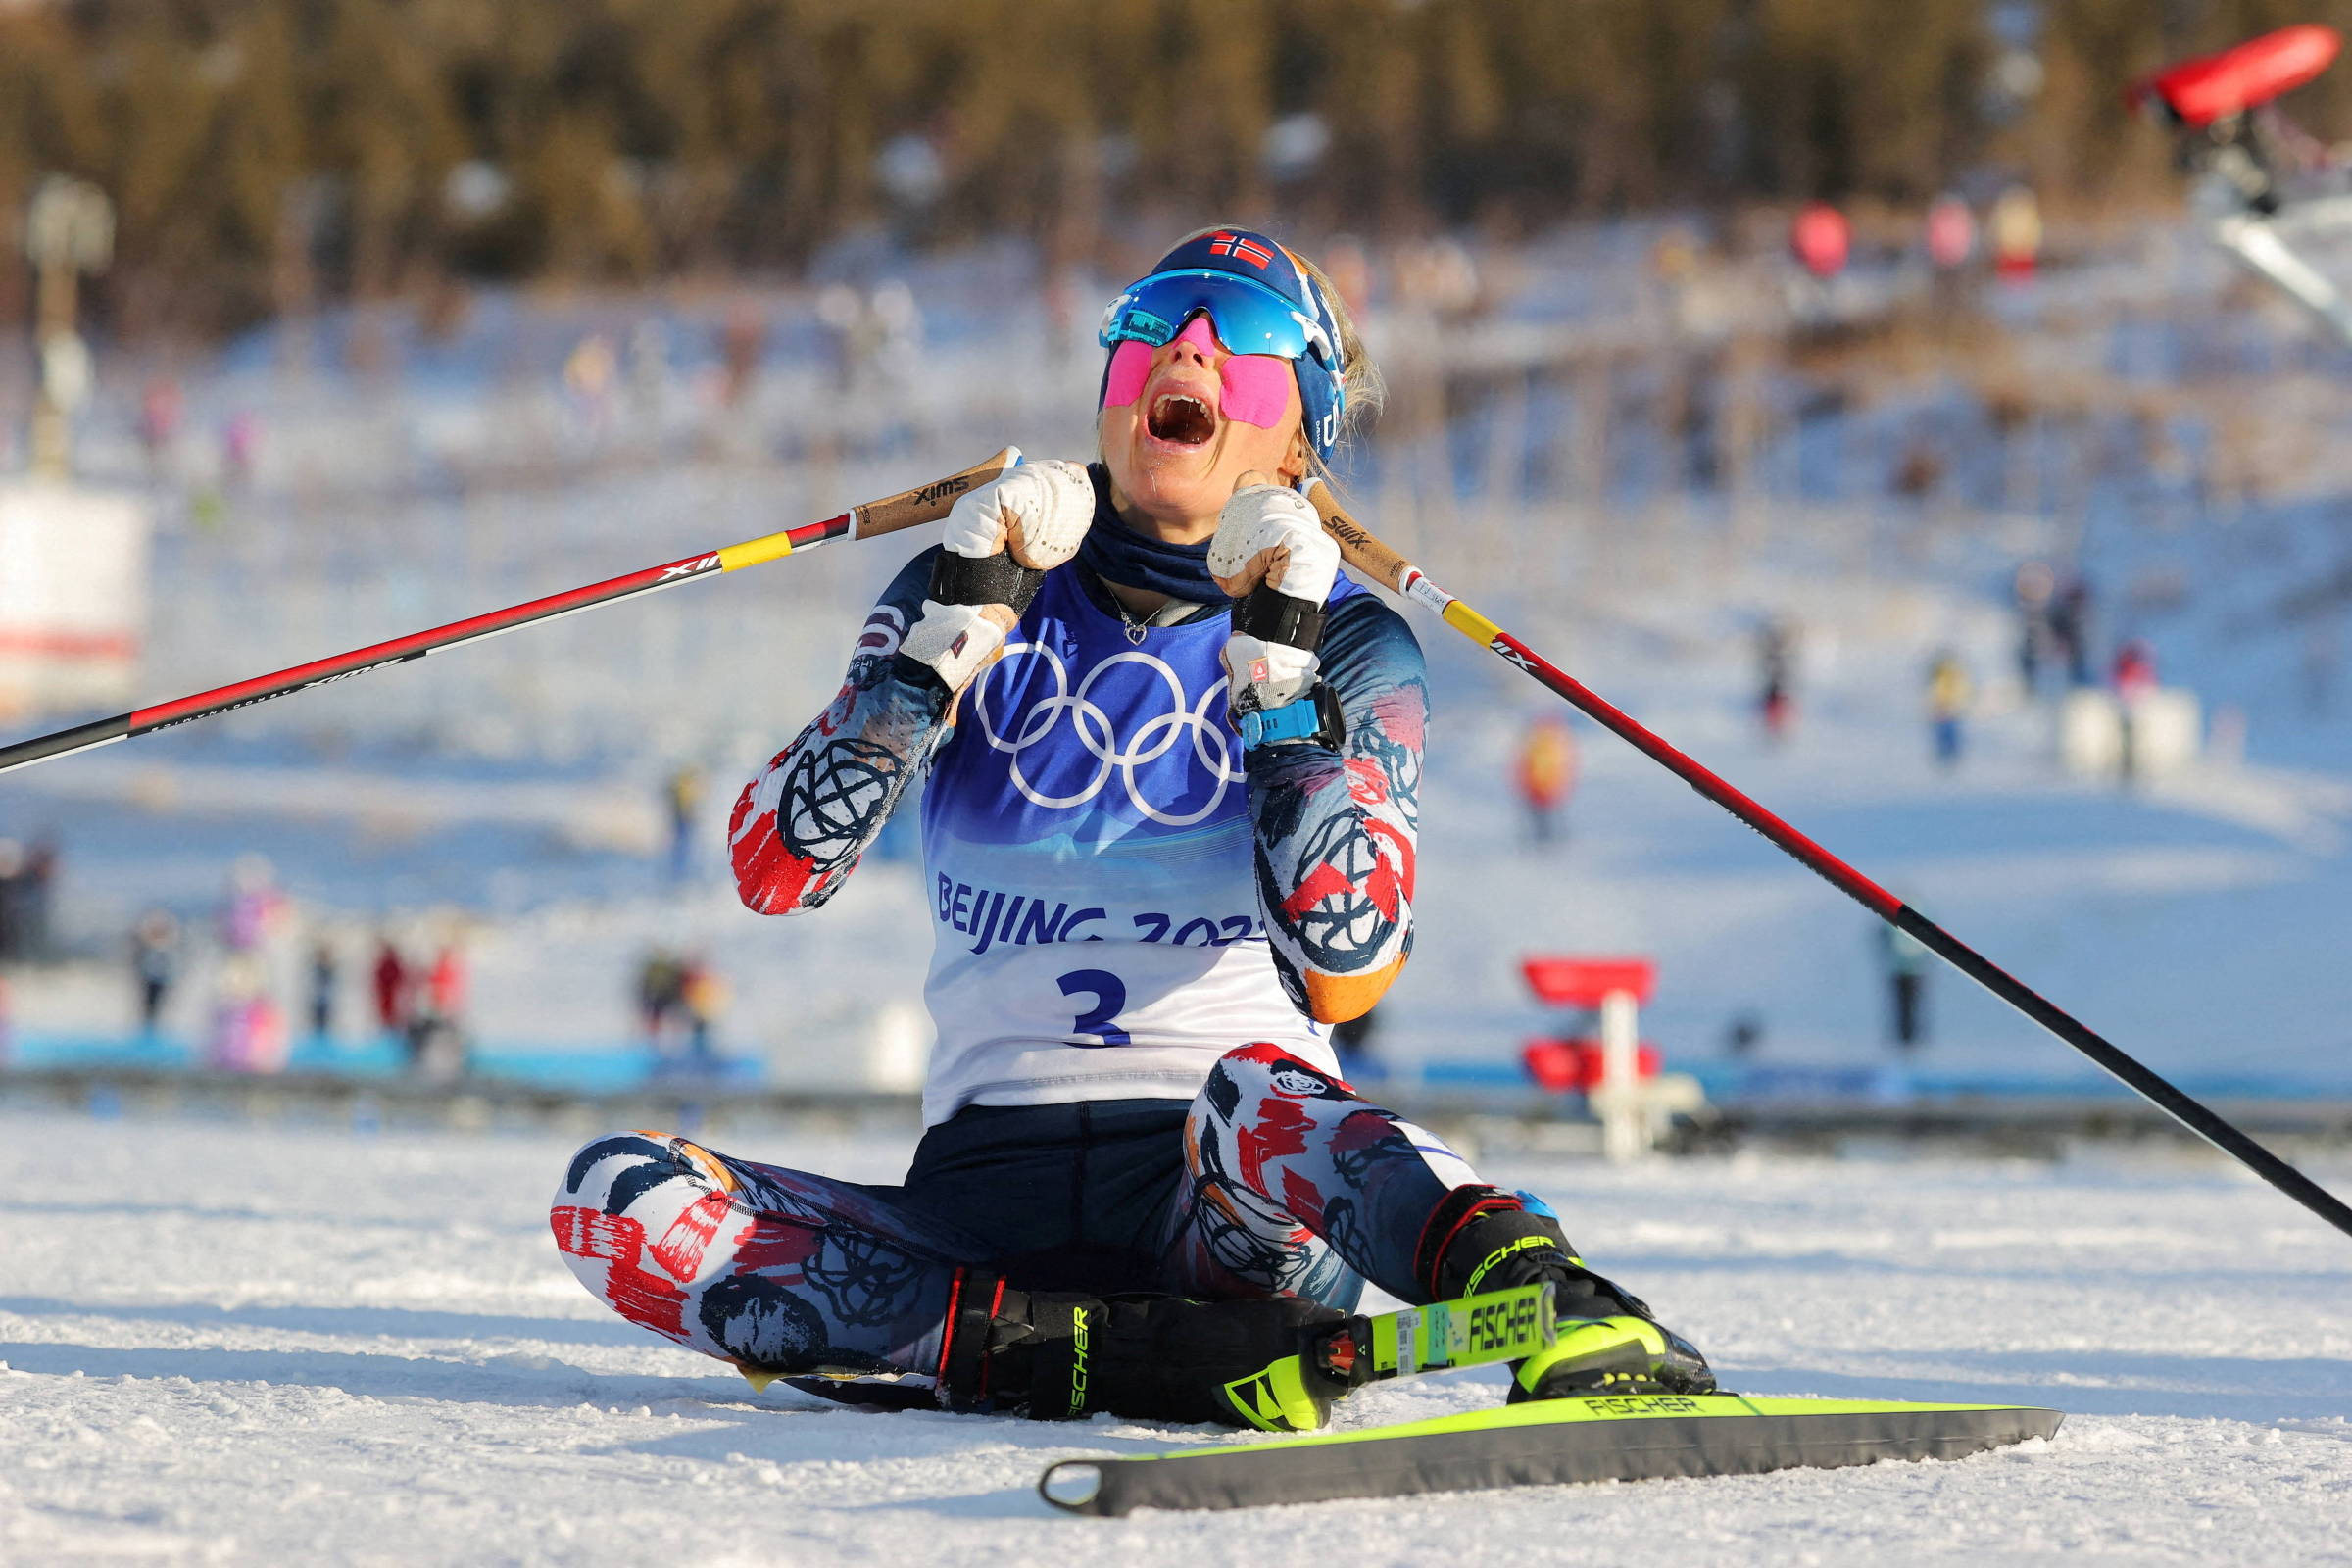 Noruega é 'campeão' dos Jogos Olímpicos de Inverno com recorde de medalhas  - Mais modalidades - SAPO Desporto